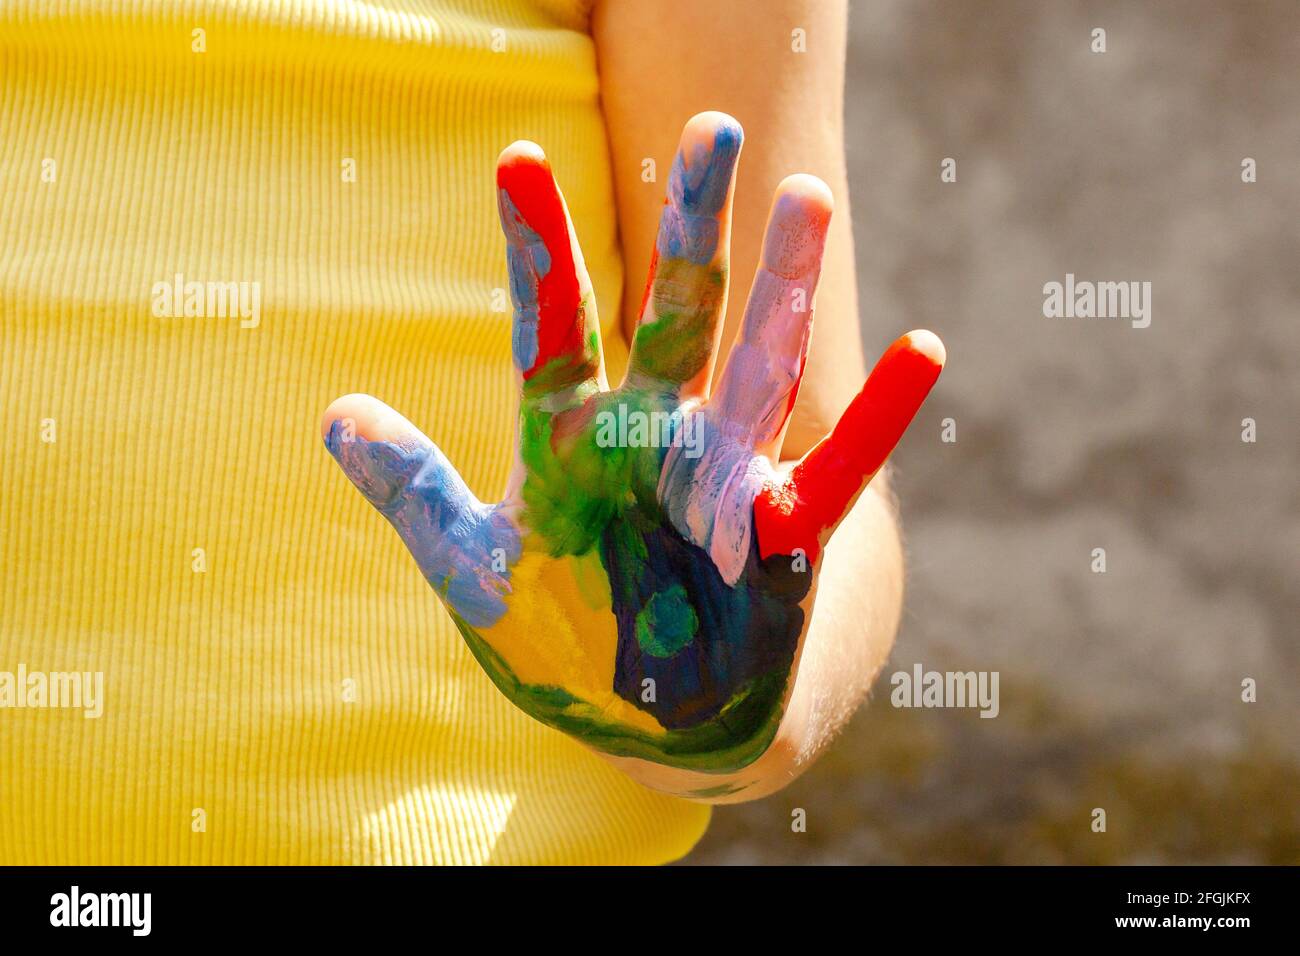 Bunte Kinderhand, Kind zeigt einfarbige Handfläche mit Farbe bedeckt, um die Kamera, Kreativität, Kunst und Handwerk, Kunsttherapie, Spaß Handwerk ein Stockfoto